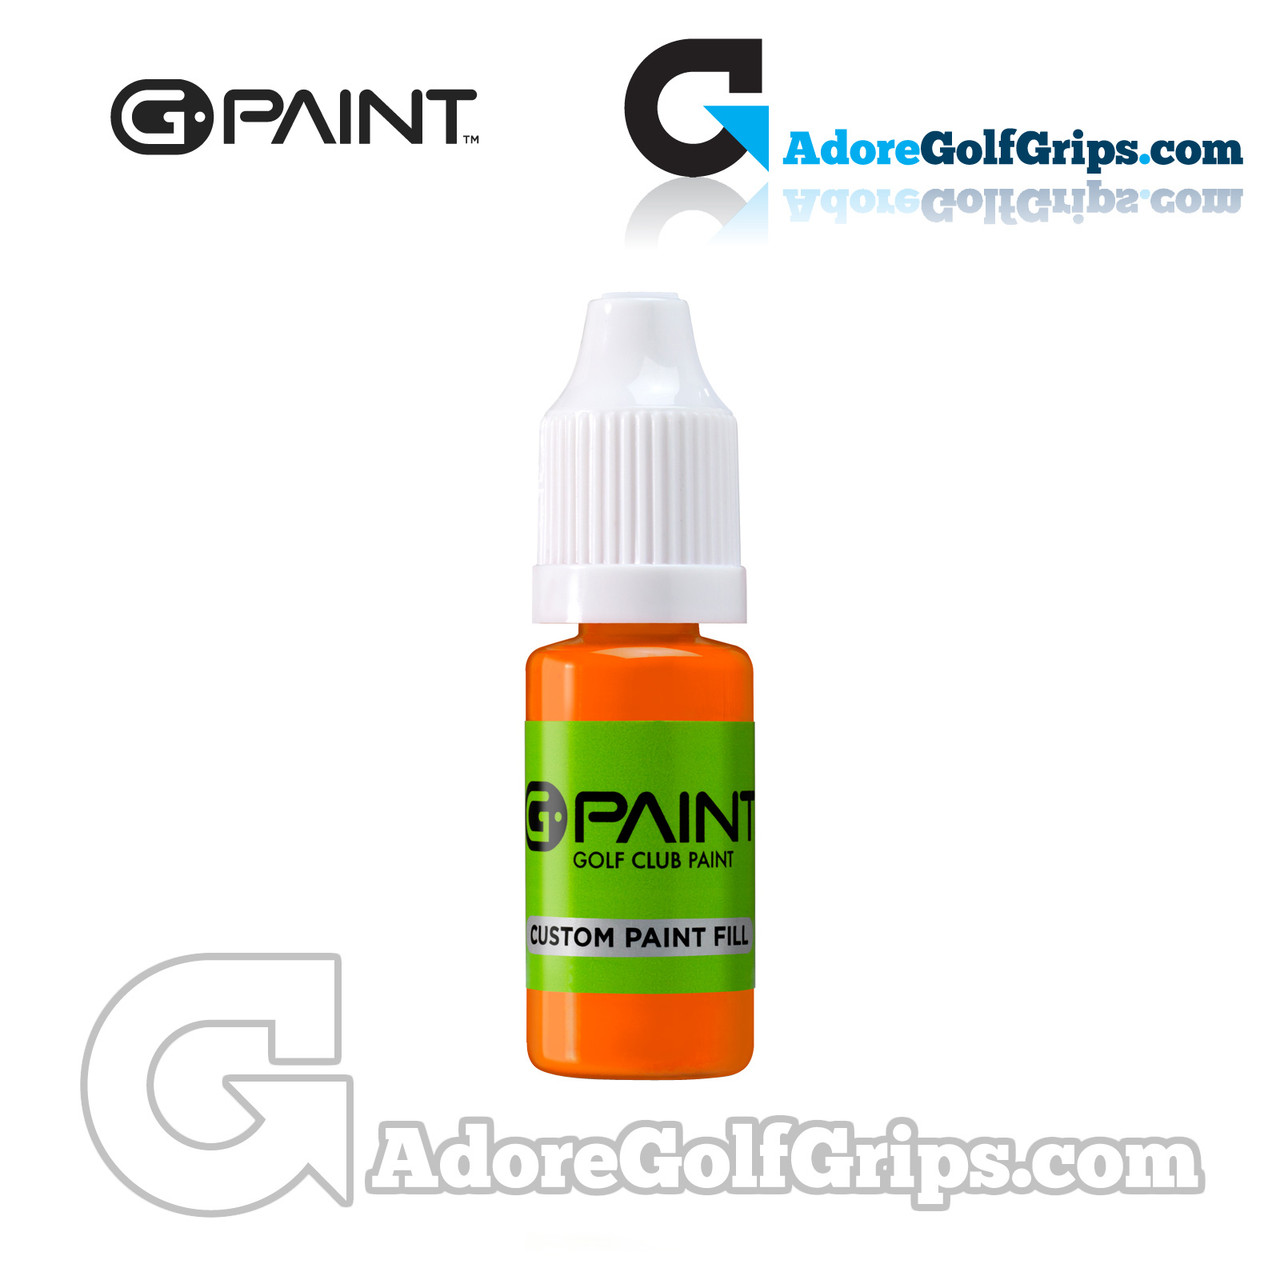 G-Paint Golf Club Paint - Single Bottles (8 Colors Available)